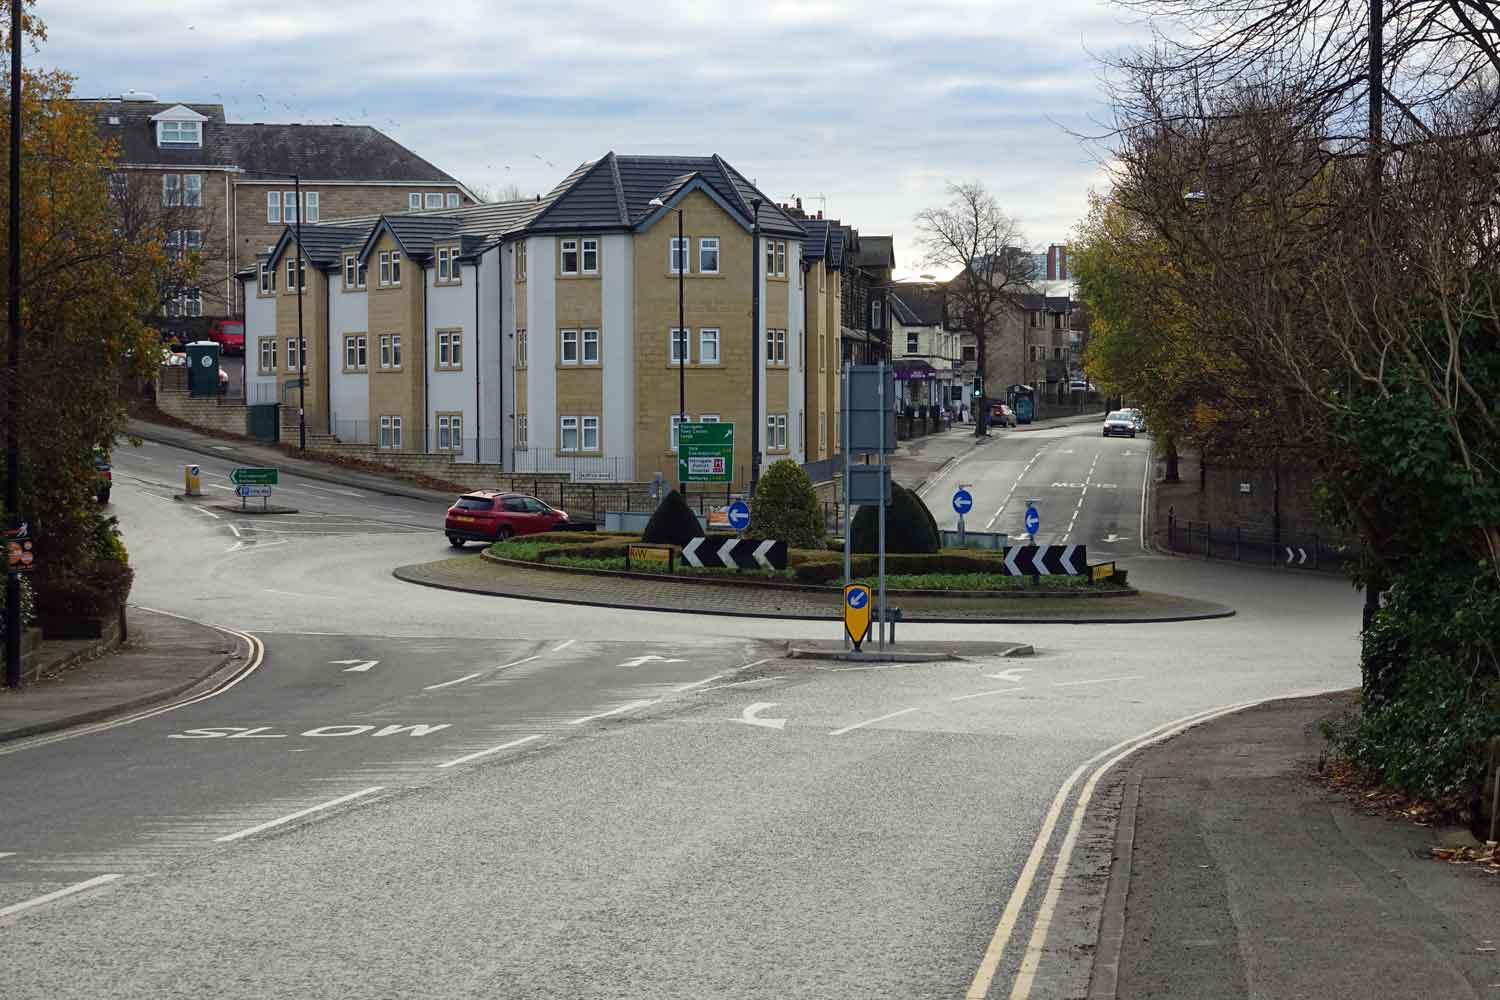 New Park roundabout Harrogate